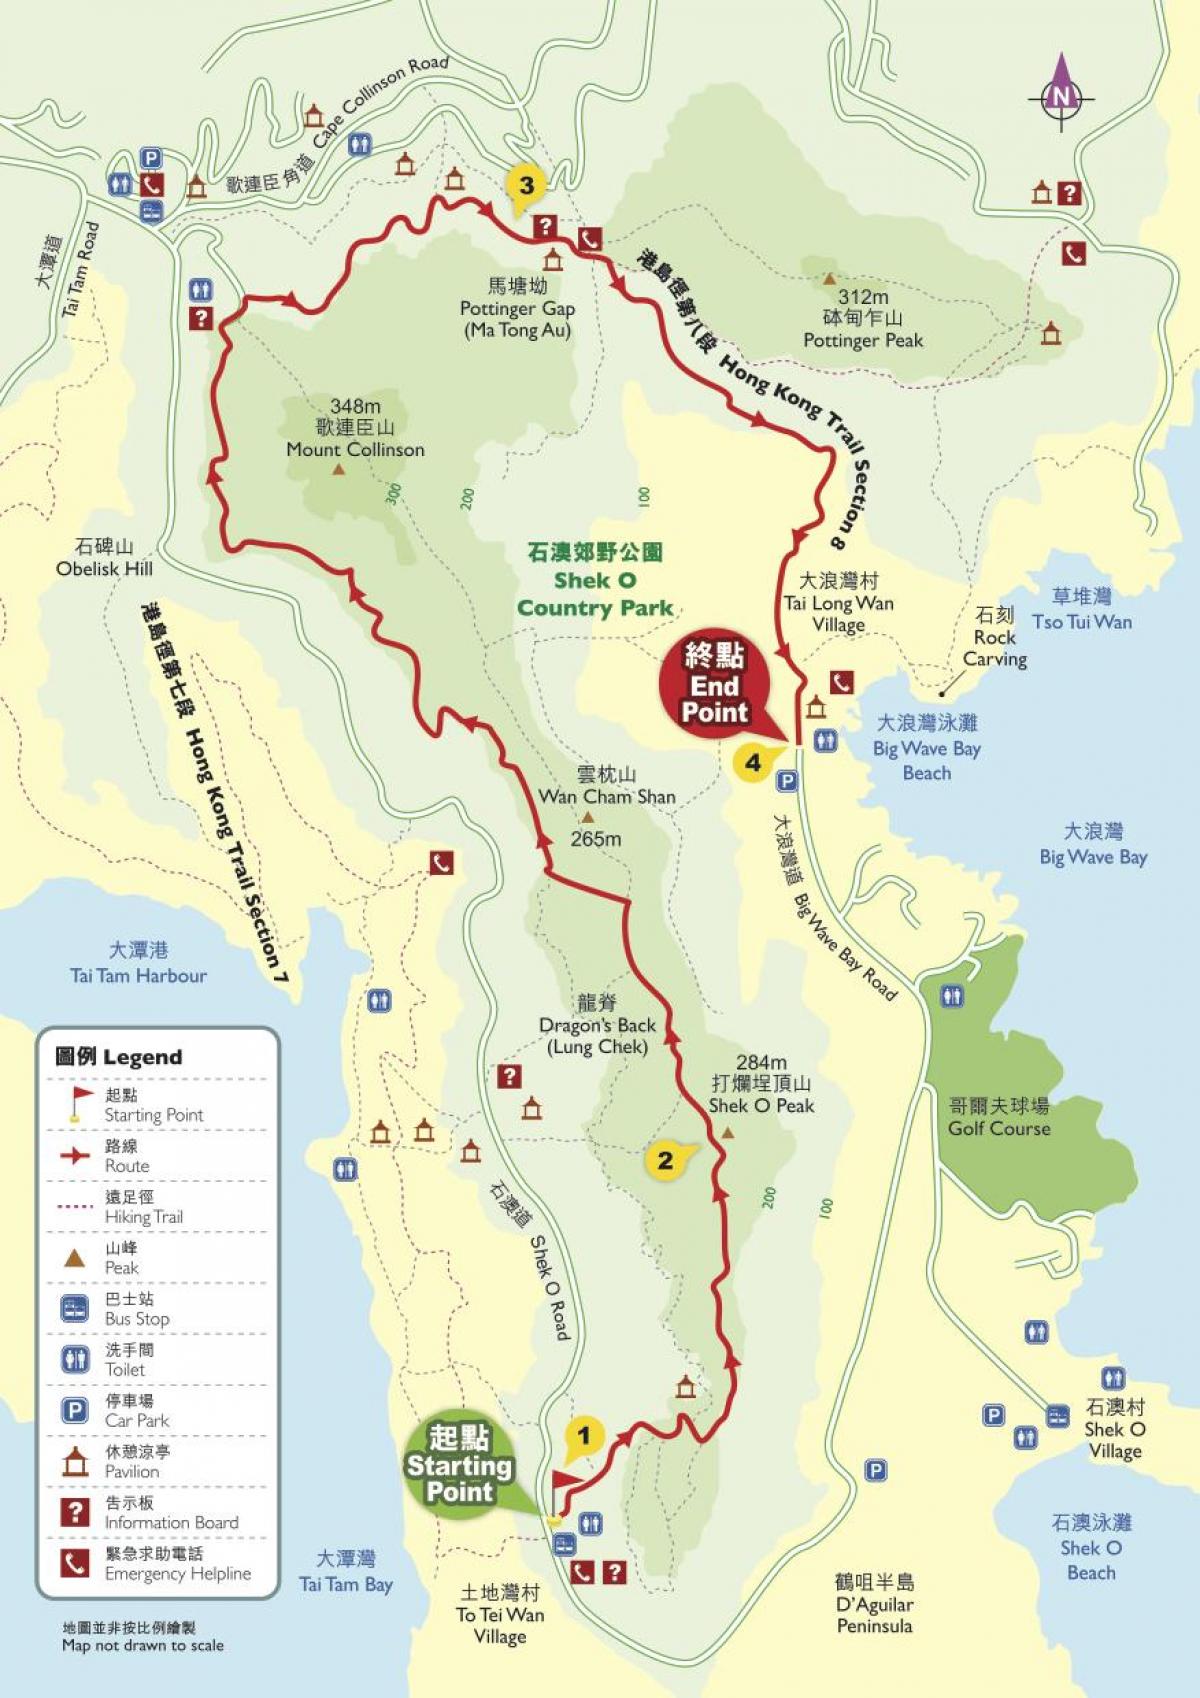 المشي لمسافات طويلة خريطة هونغ كونغ